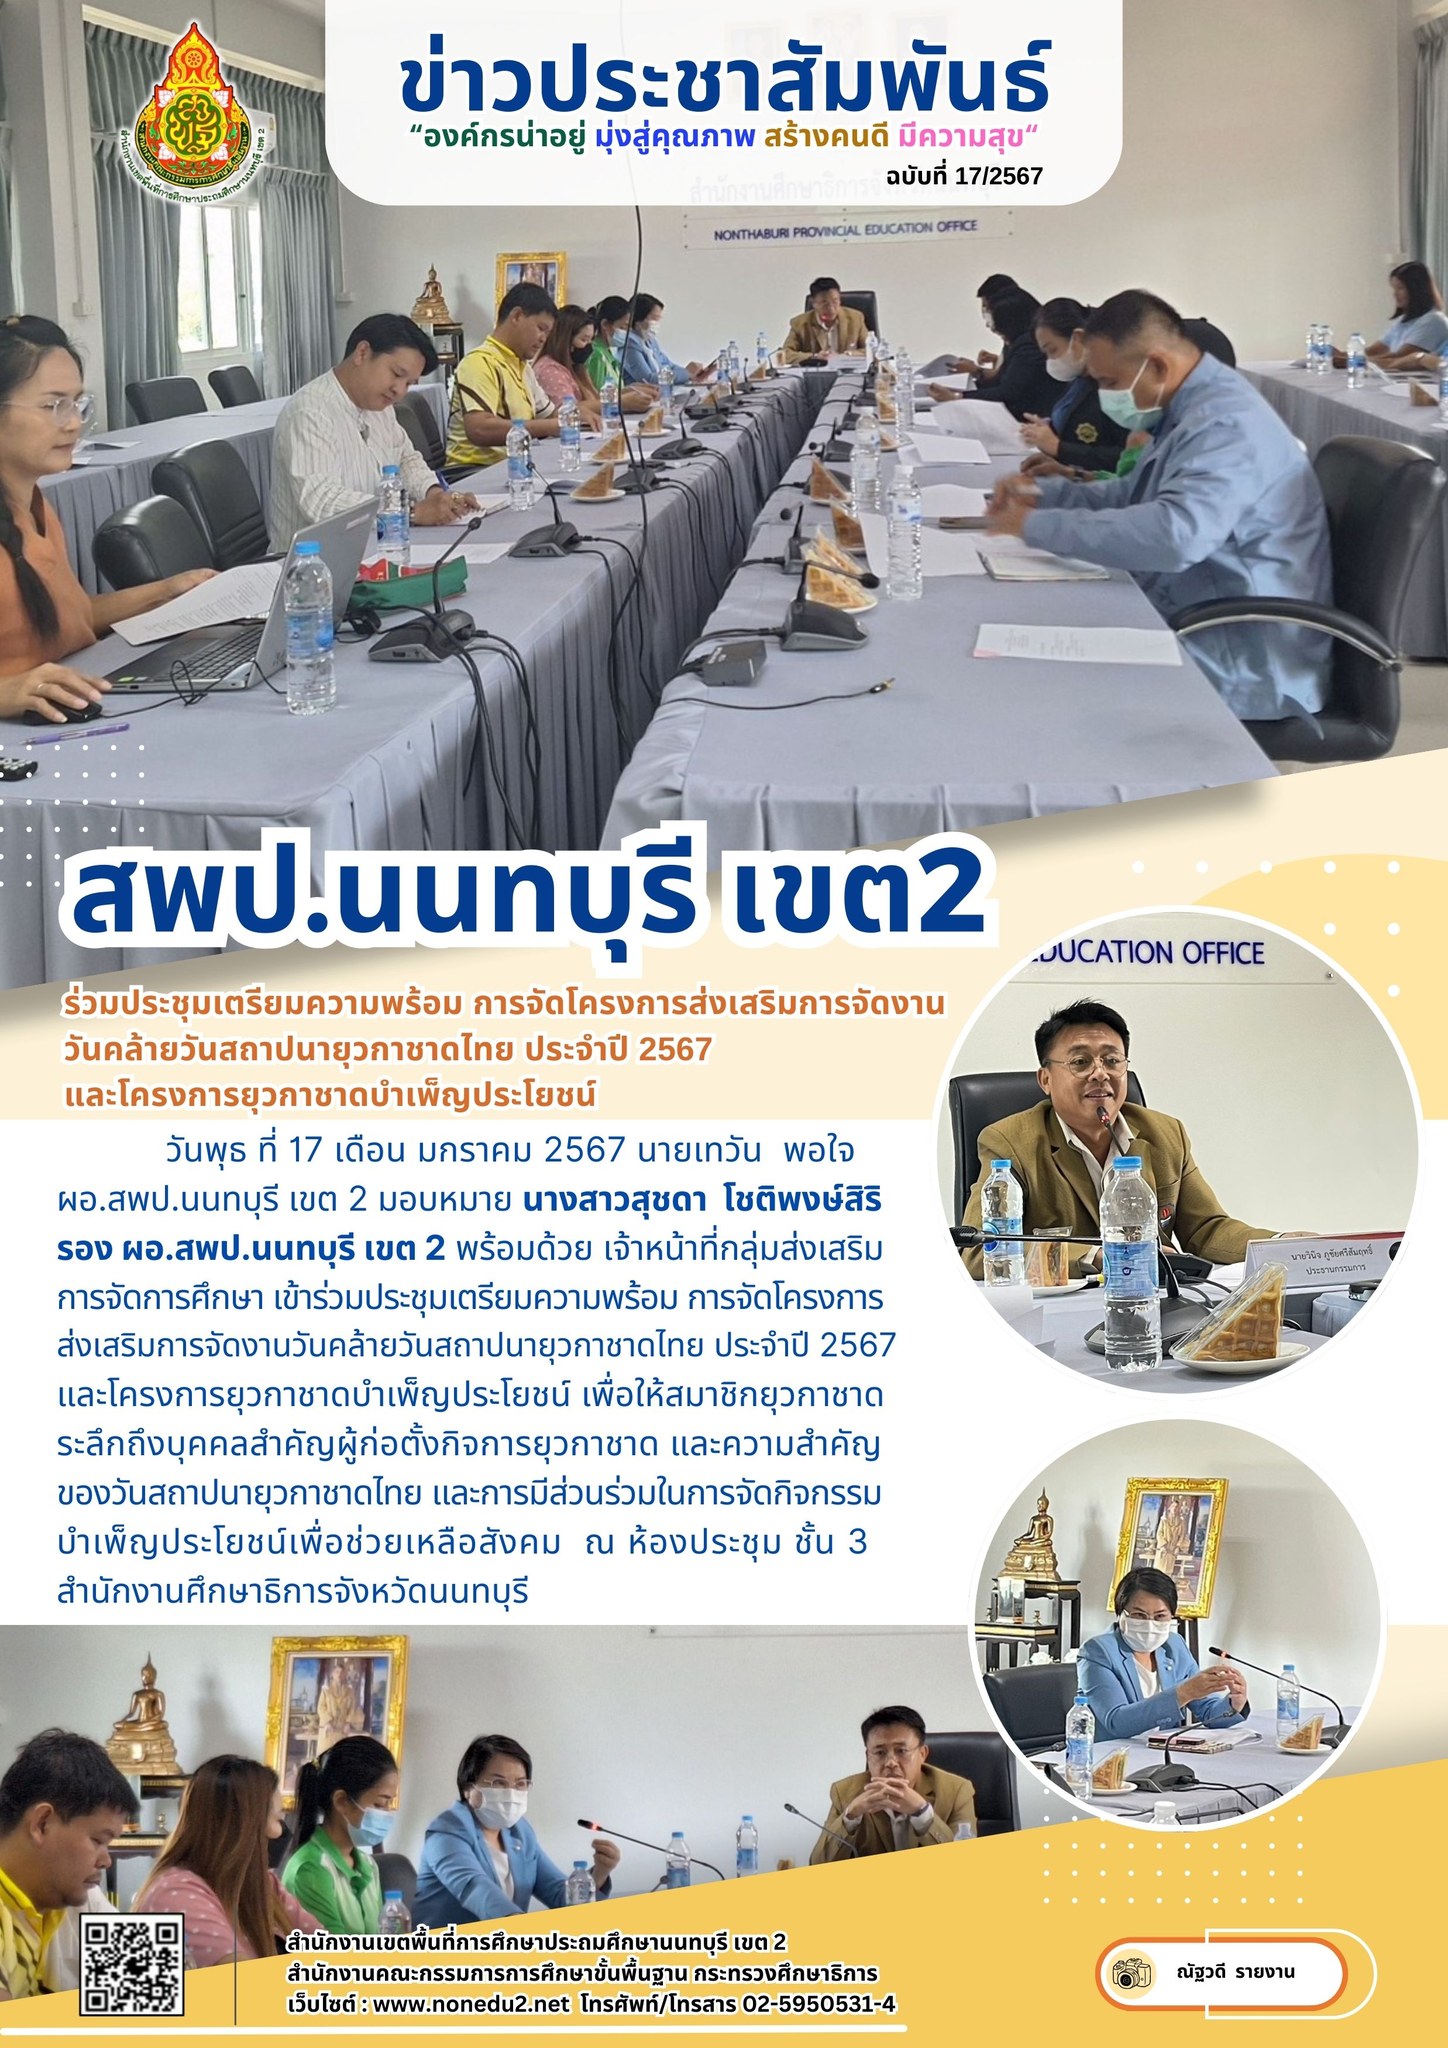 ประชุมเตรียมความพร้อม การจัดโครงการส่งเสริมการจัดงานวันคล้ายวันสถาปนายุวกาชาดไทย ประจำปี 2567 และโครงการยุวกาชาดบำเพ็ญประโยชน์